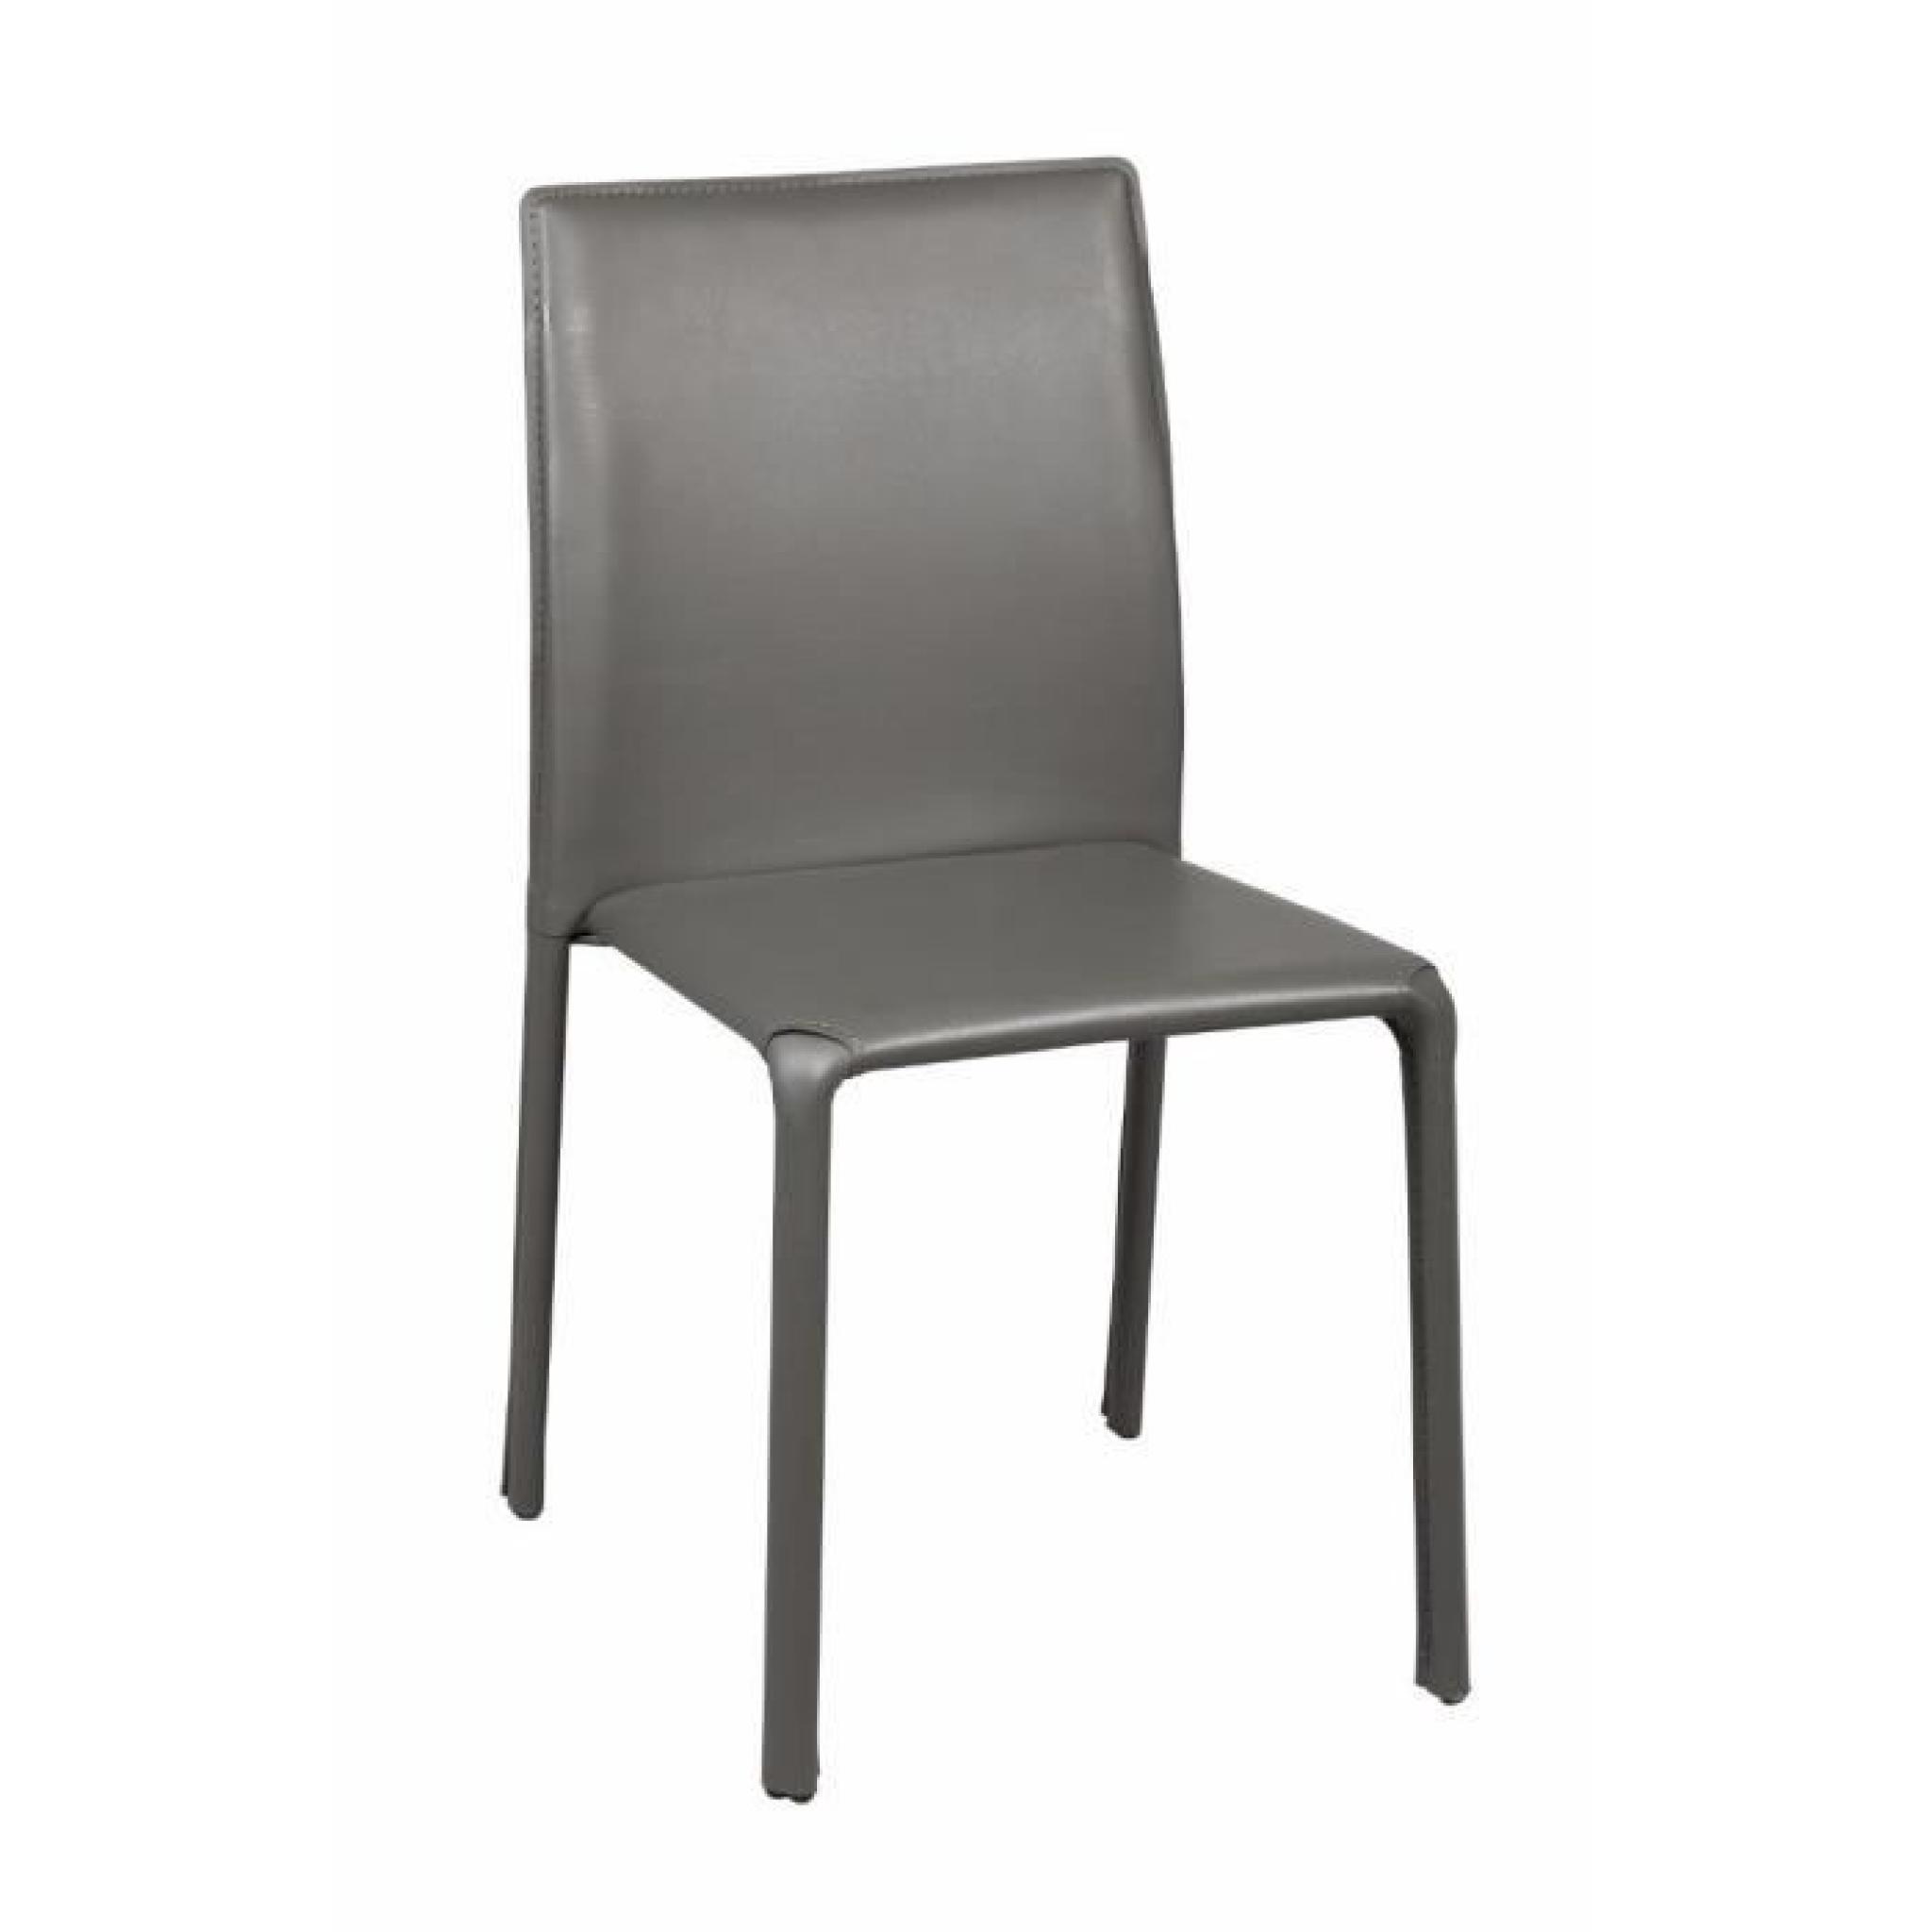 Chaise DIVA en PVC gris